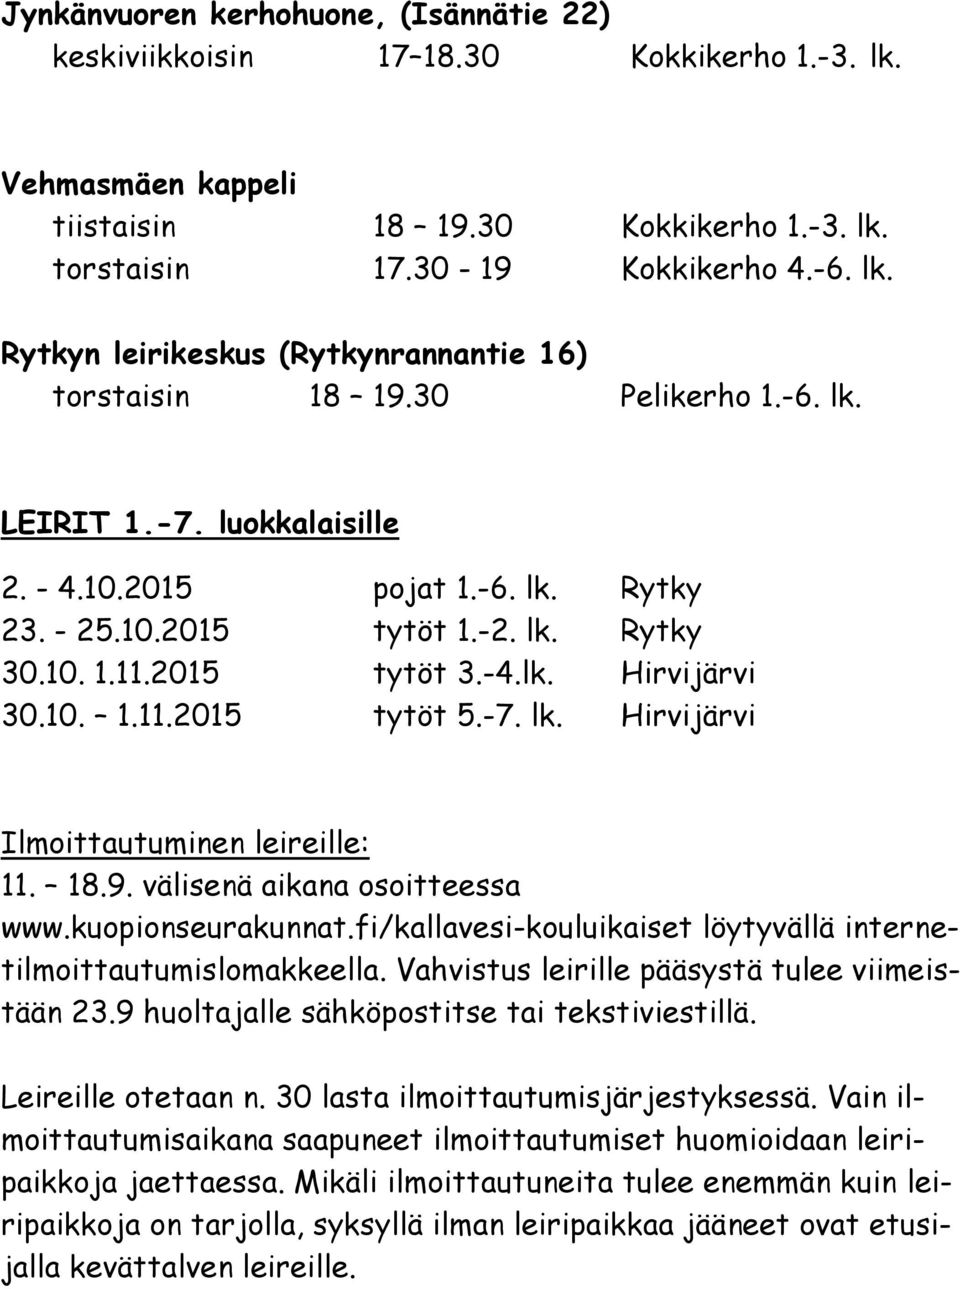 18.9. välisenä aikana osoitteessa www.kuopionseurakunnat.fi/kallavesi-kouluikaiset löytyvällä internetilmoittautumislomakkeella. Vahvistus leirille pääsystä tulee viimeistään 23.